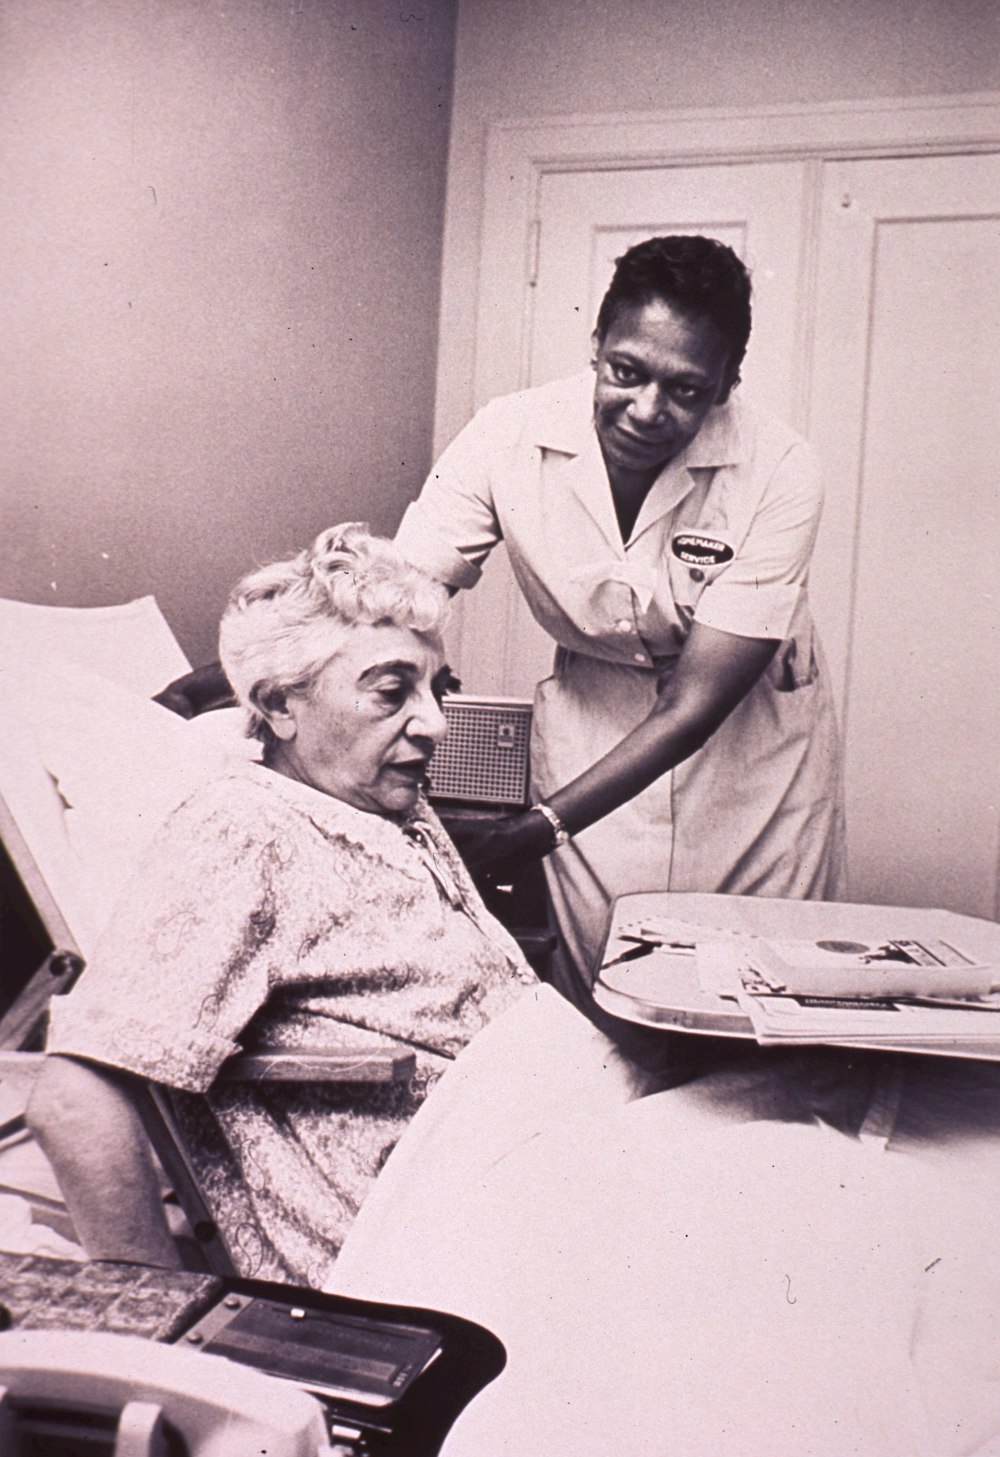 병원 침대에서 간호사의 도움을 받는 여성